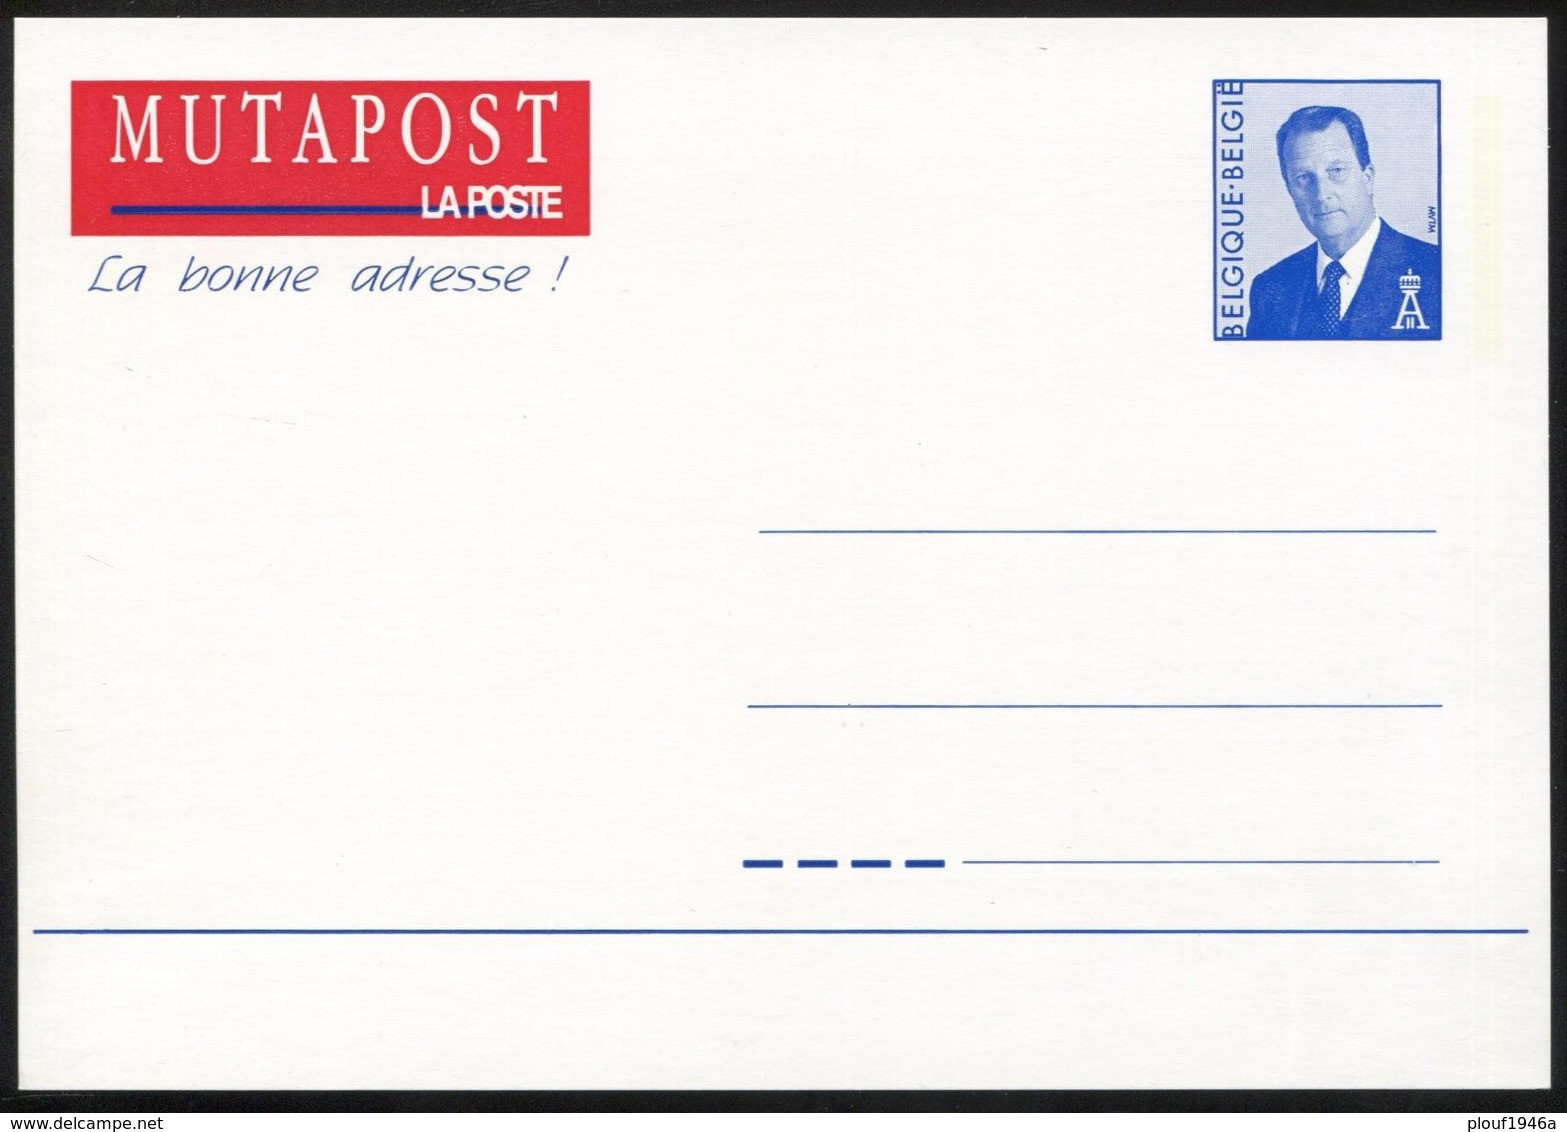 1996 "Mutapost" FR - Avis Changement Adresse